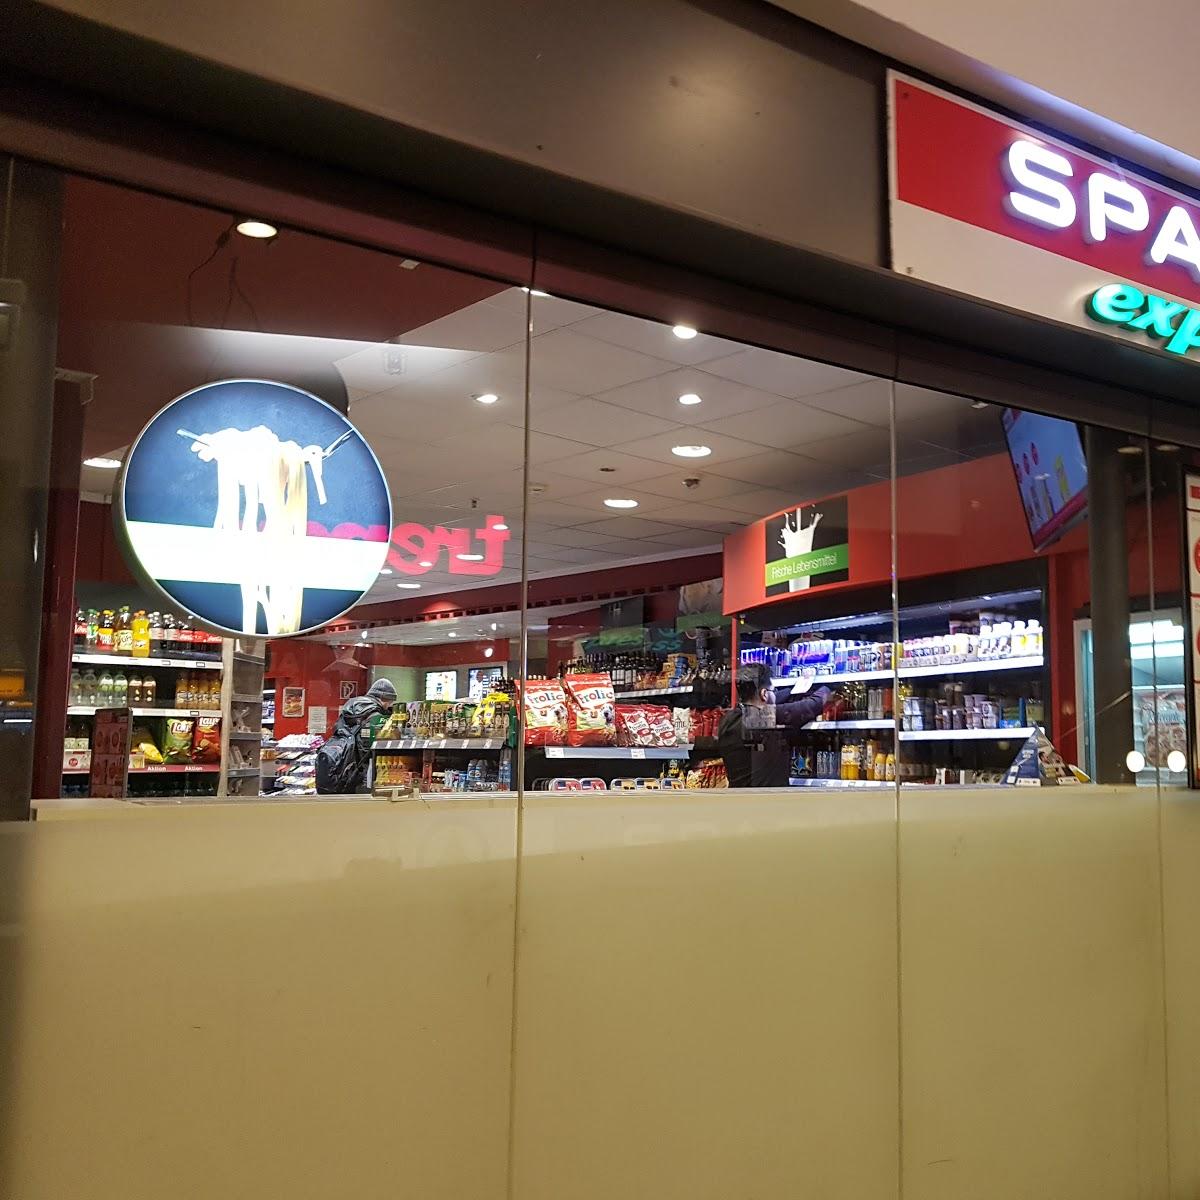 Restaurant "Spar express" in Bremen